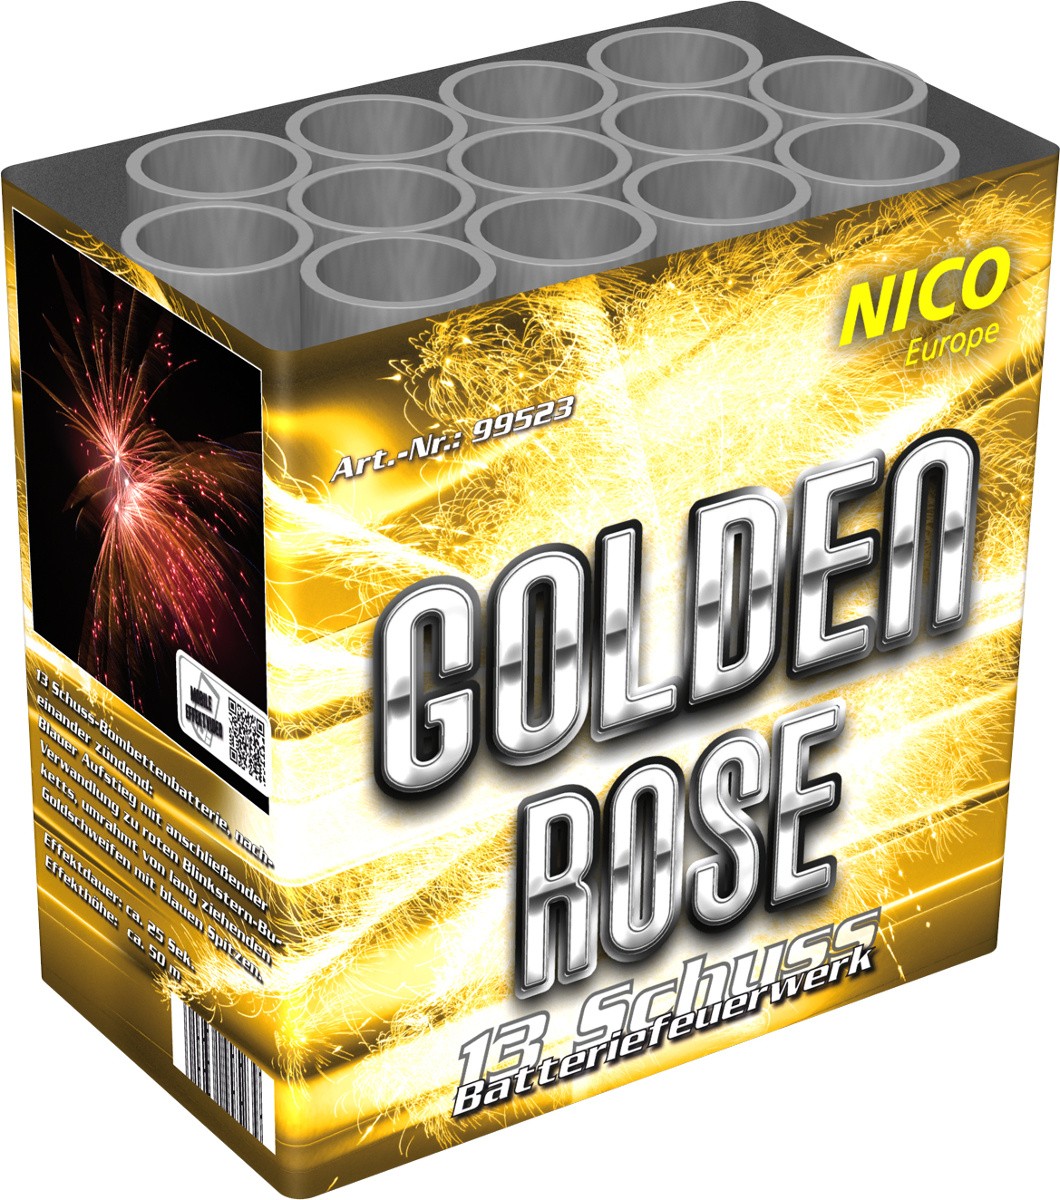 Batterie Feuerwerk Golden Rose 13 Schuss